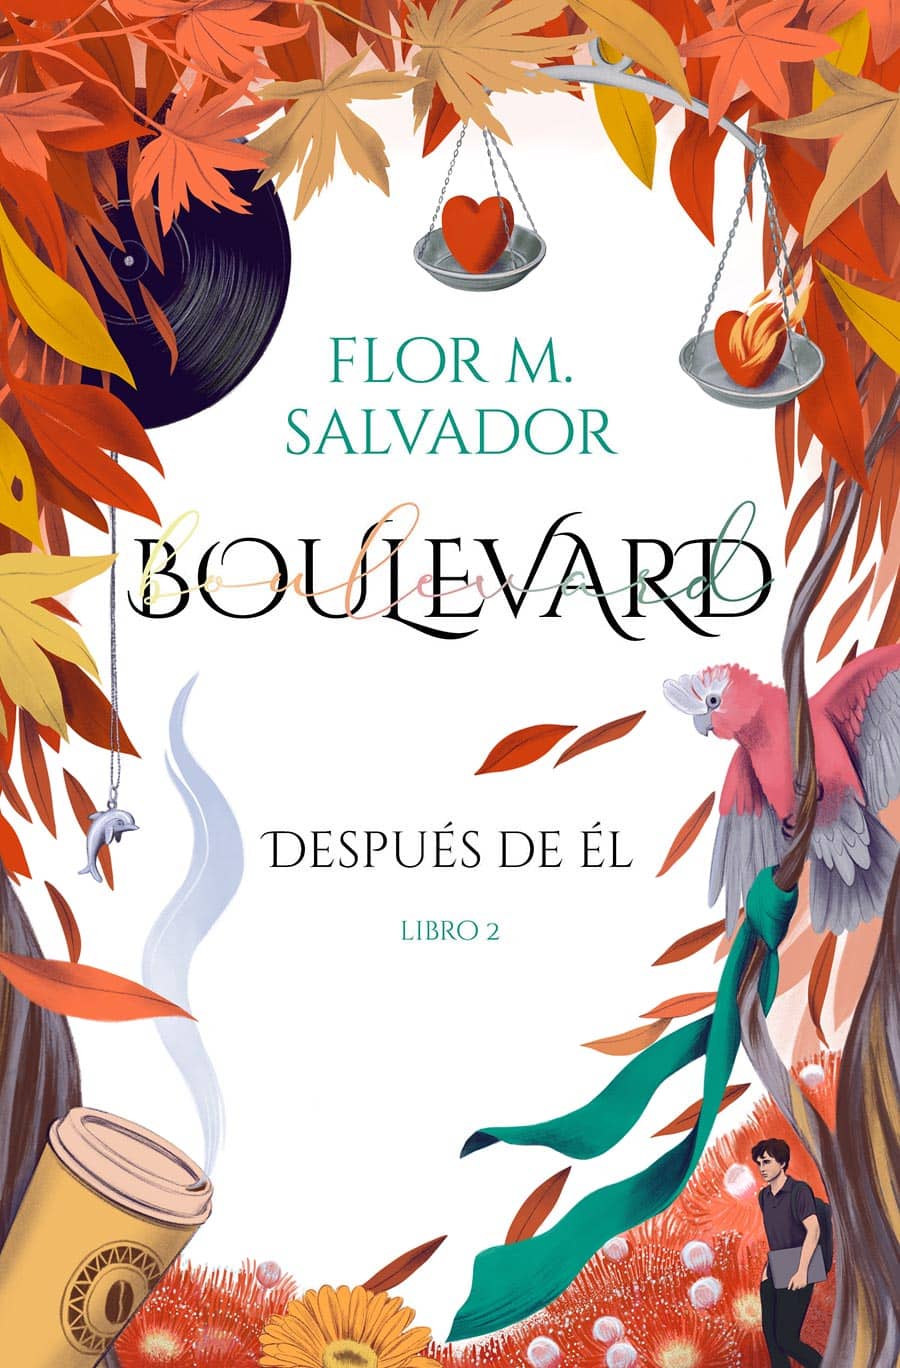 Cover Illustration for Boulevard II, Flor M. Salvador